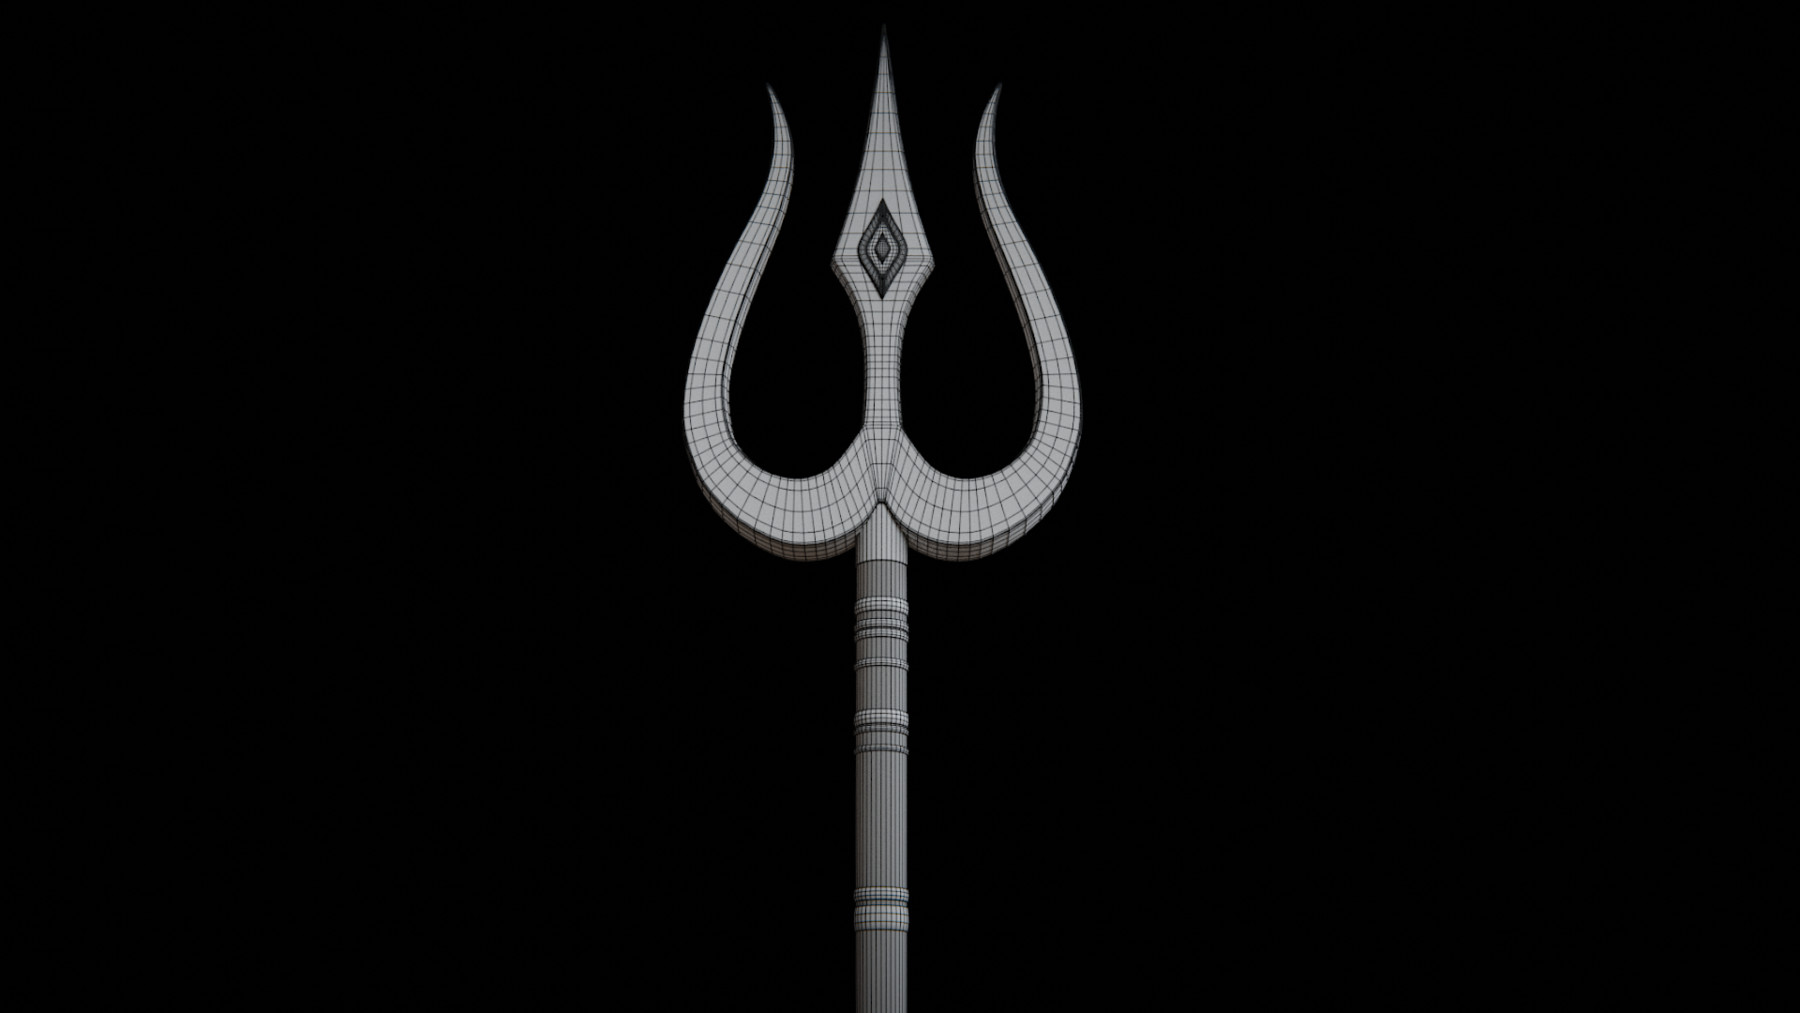 Trishul of Lord Shiva